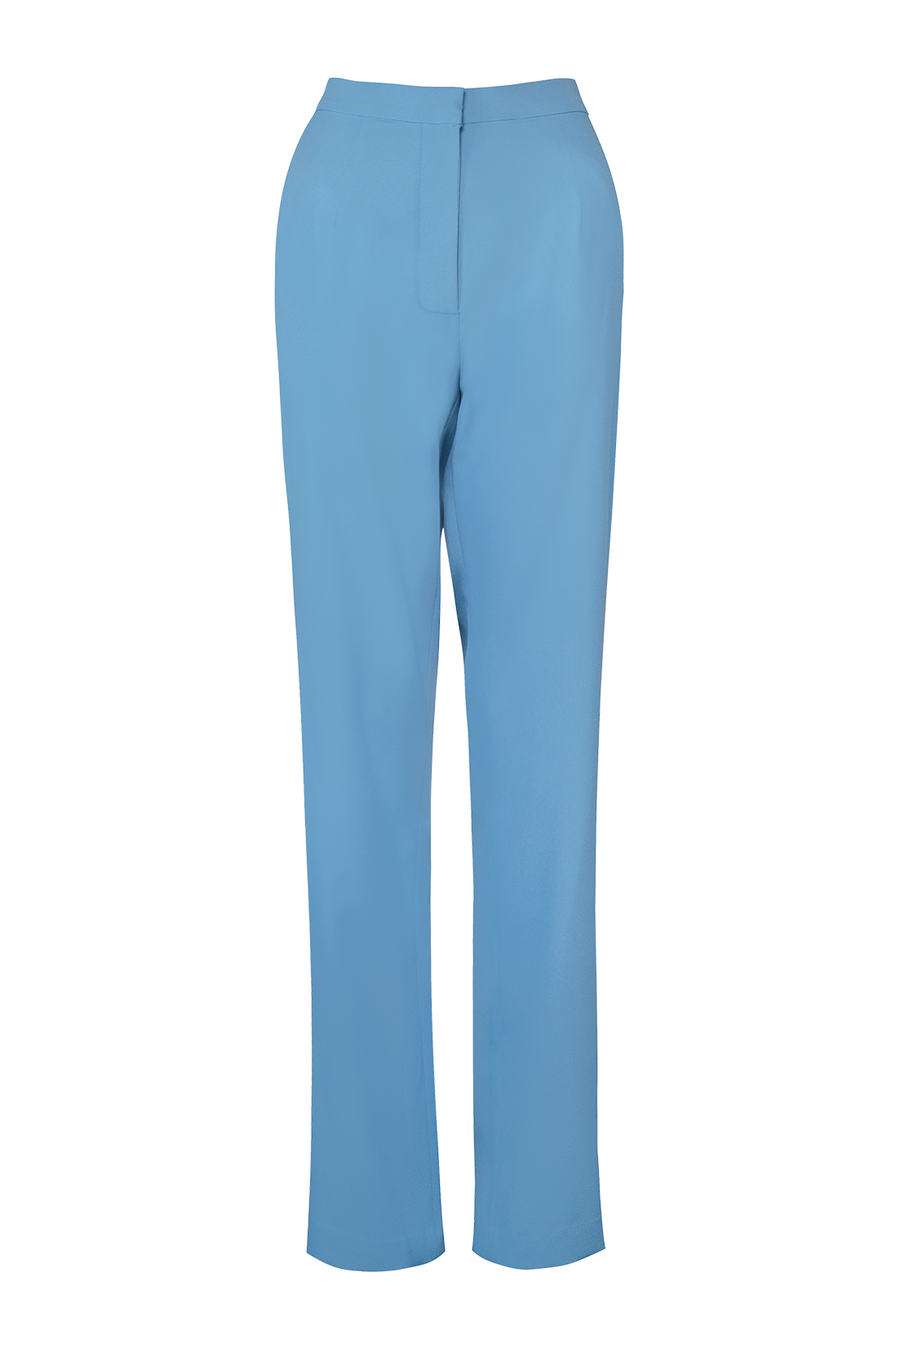 Blue Bird Suit/Pant